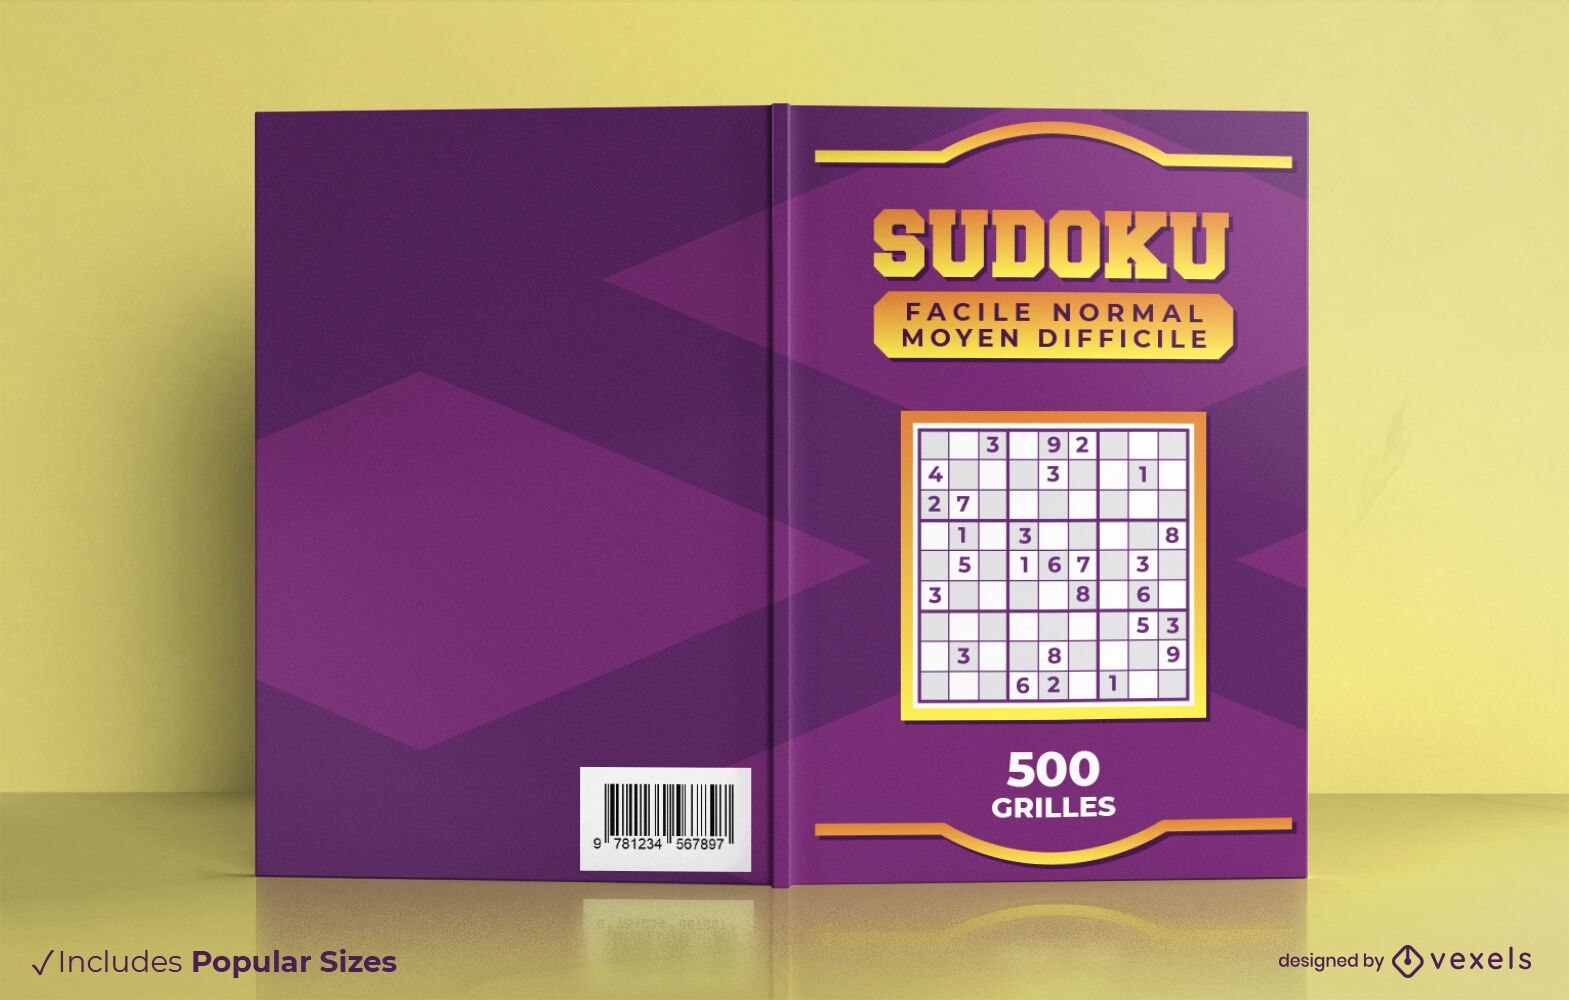 Dise?o de portada de libro de juegos de Sudoku.